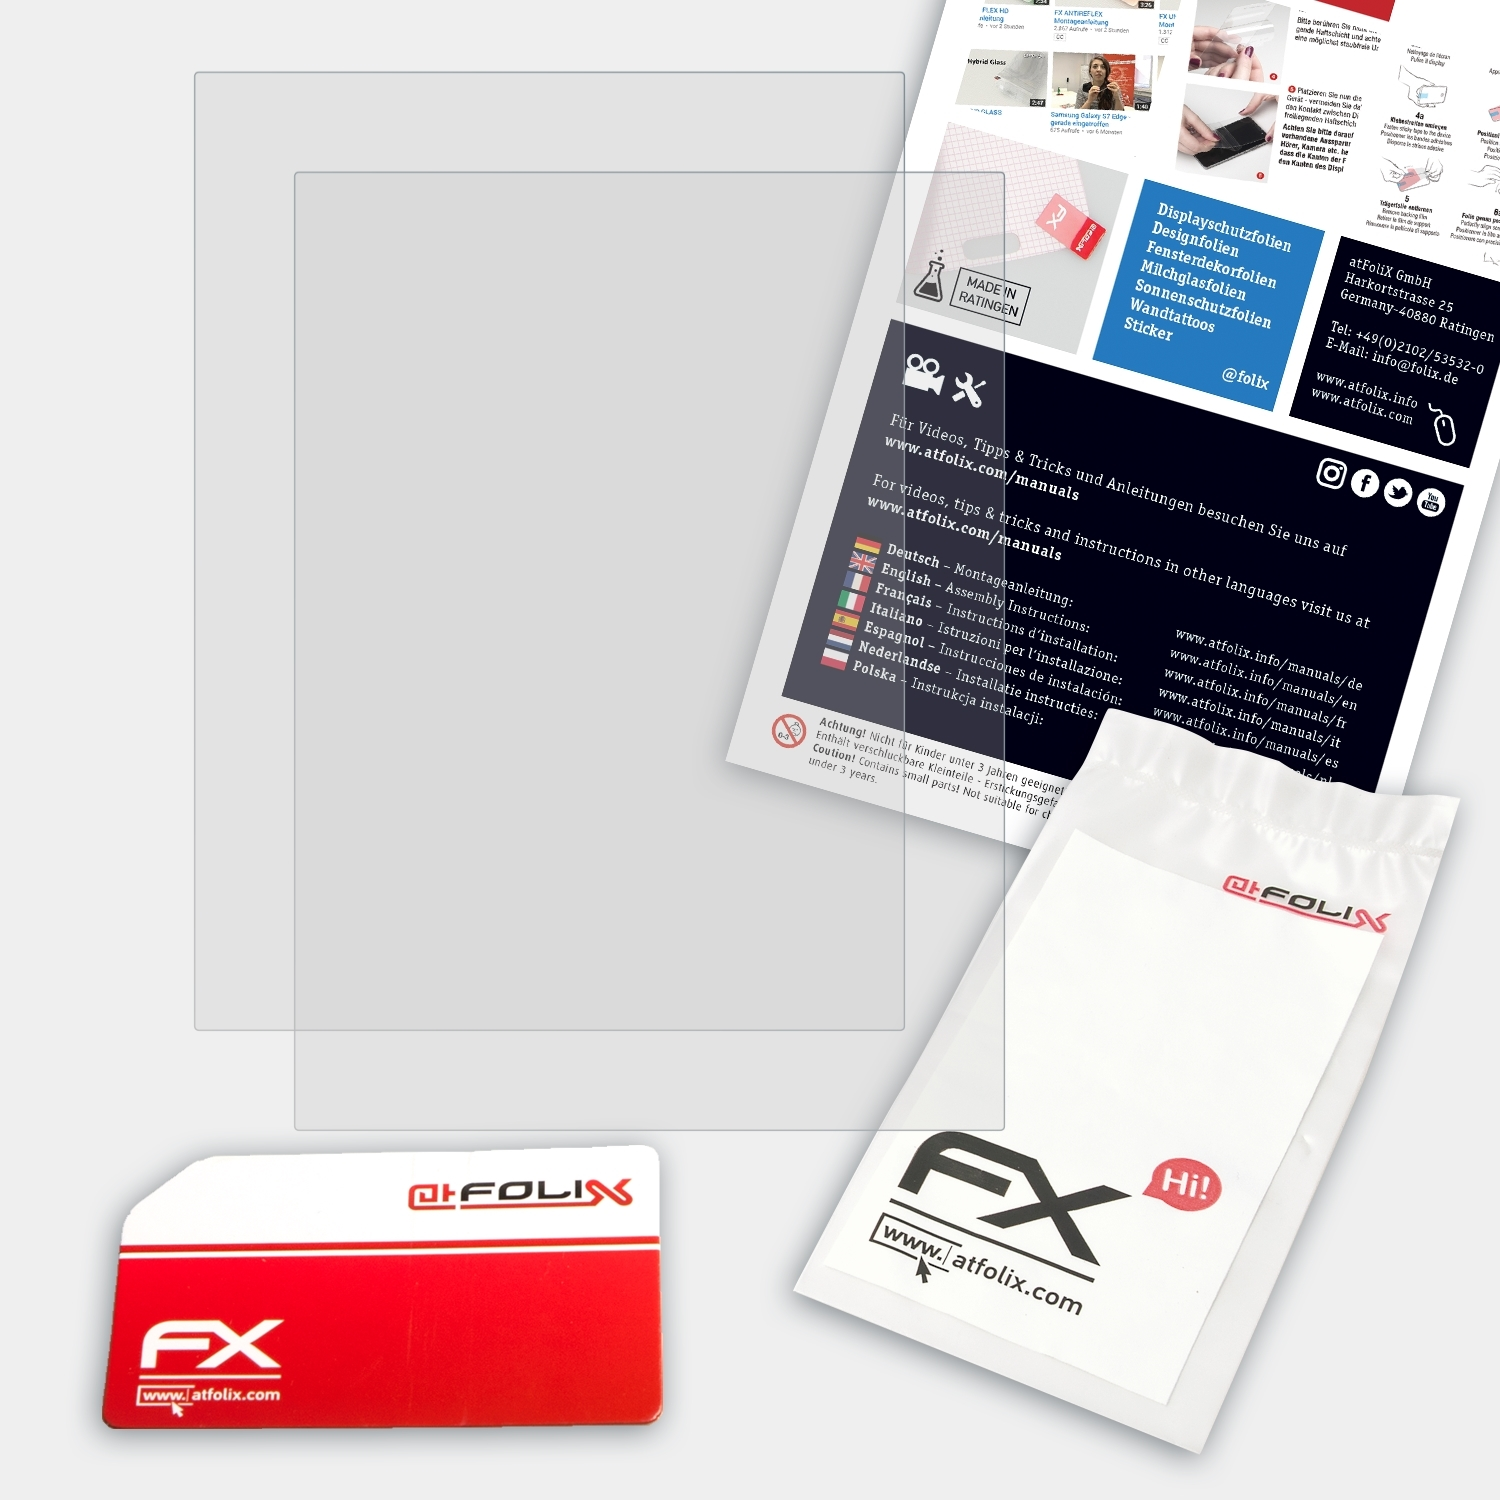 ATFOLIX 2x FX-Antireflex Displayschutz(für & Barnes 3) Noble GlowLight NOOK